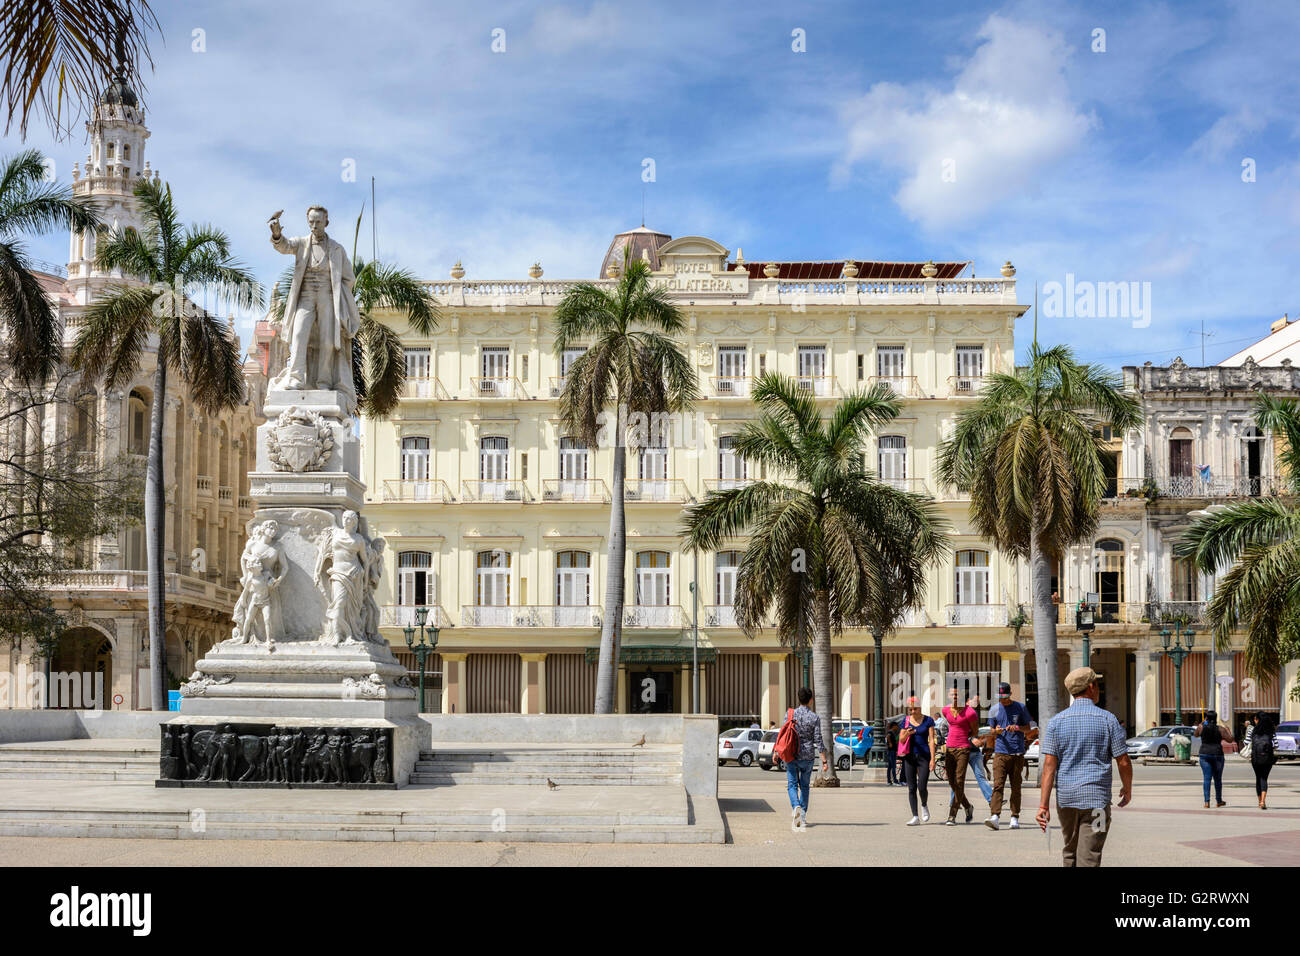 Statua di Jose Marti e Hotel Inglaterra, Parque Central, Havana, Cuba Foto Stock